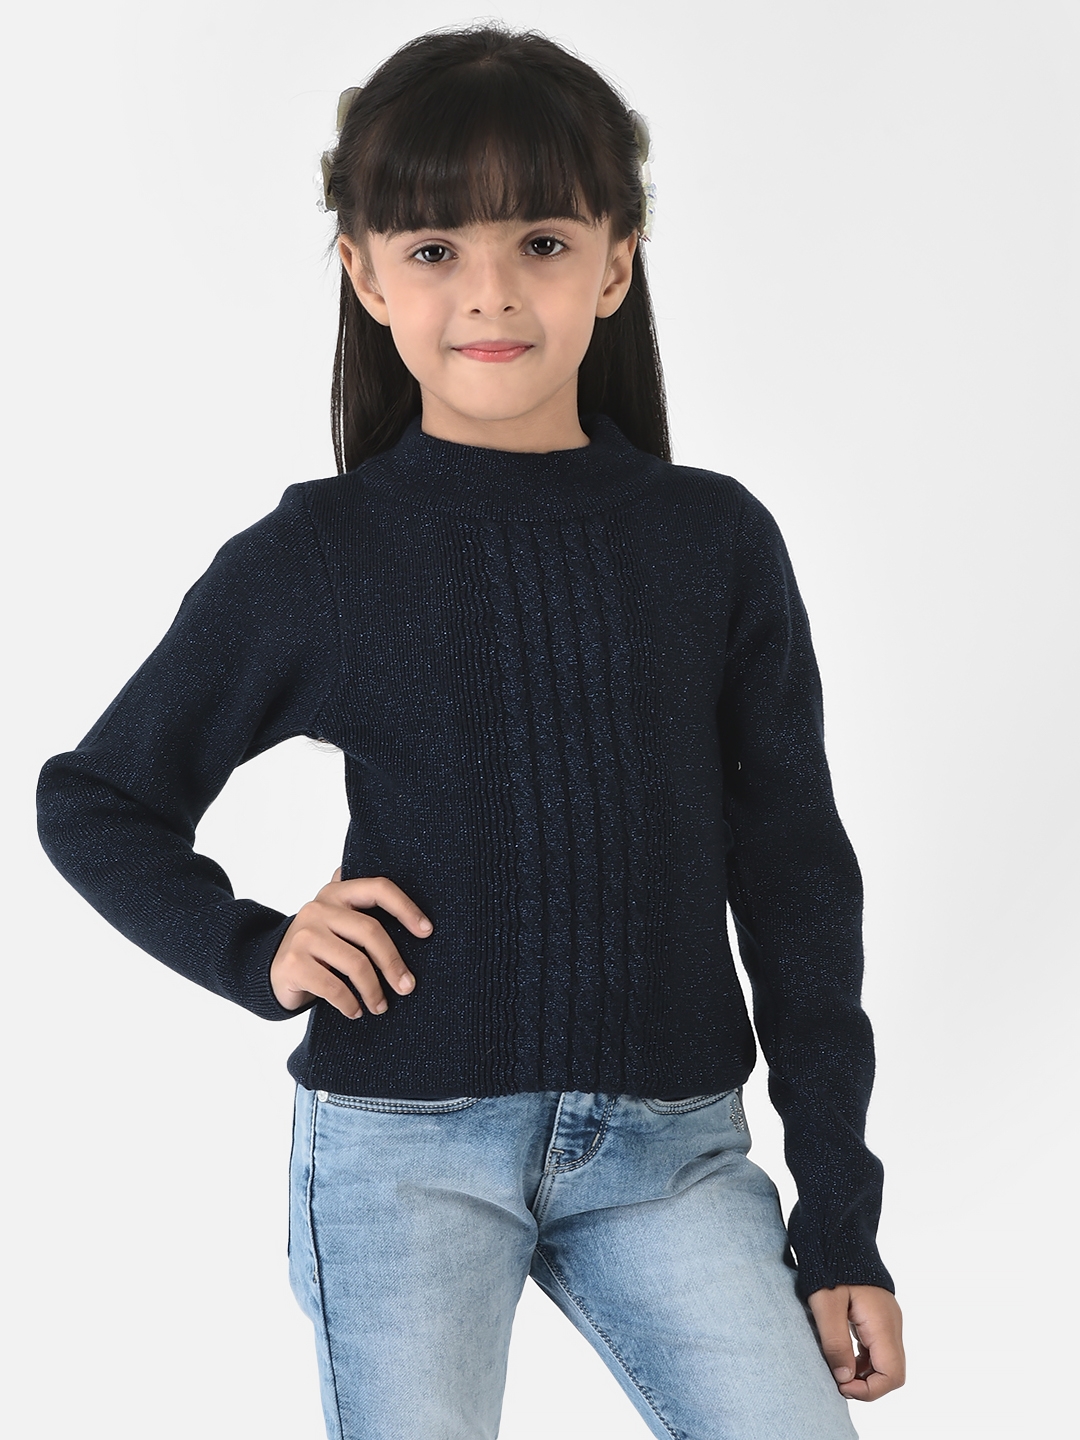 Crimsoune Club | Crimsoune Club Girls Navy Blue Sweater in Self-Designed Print